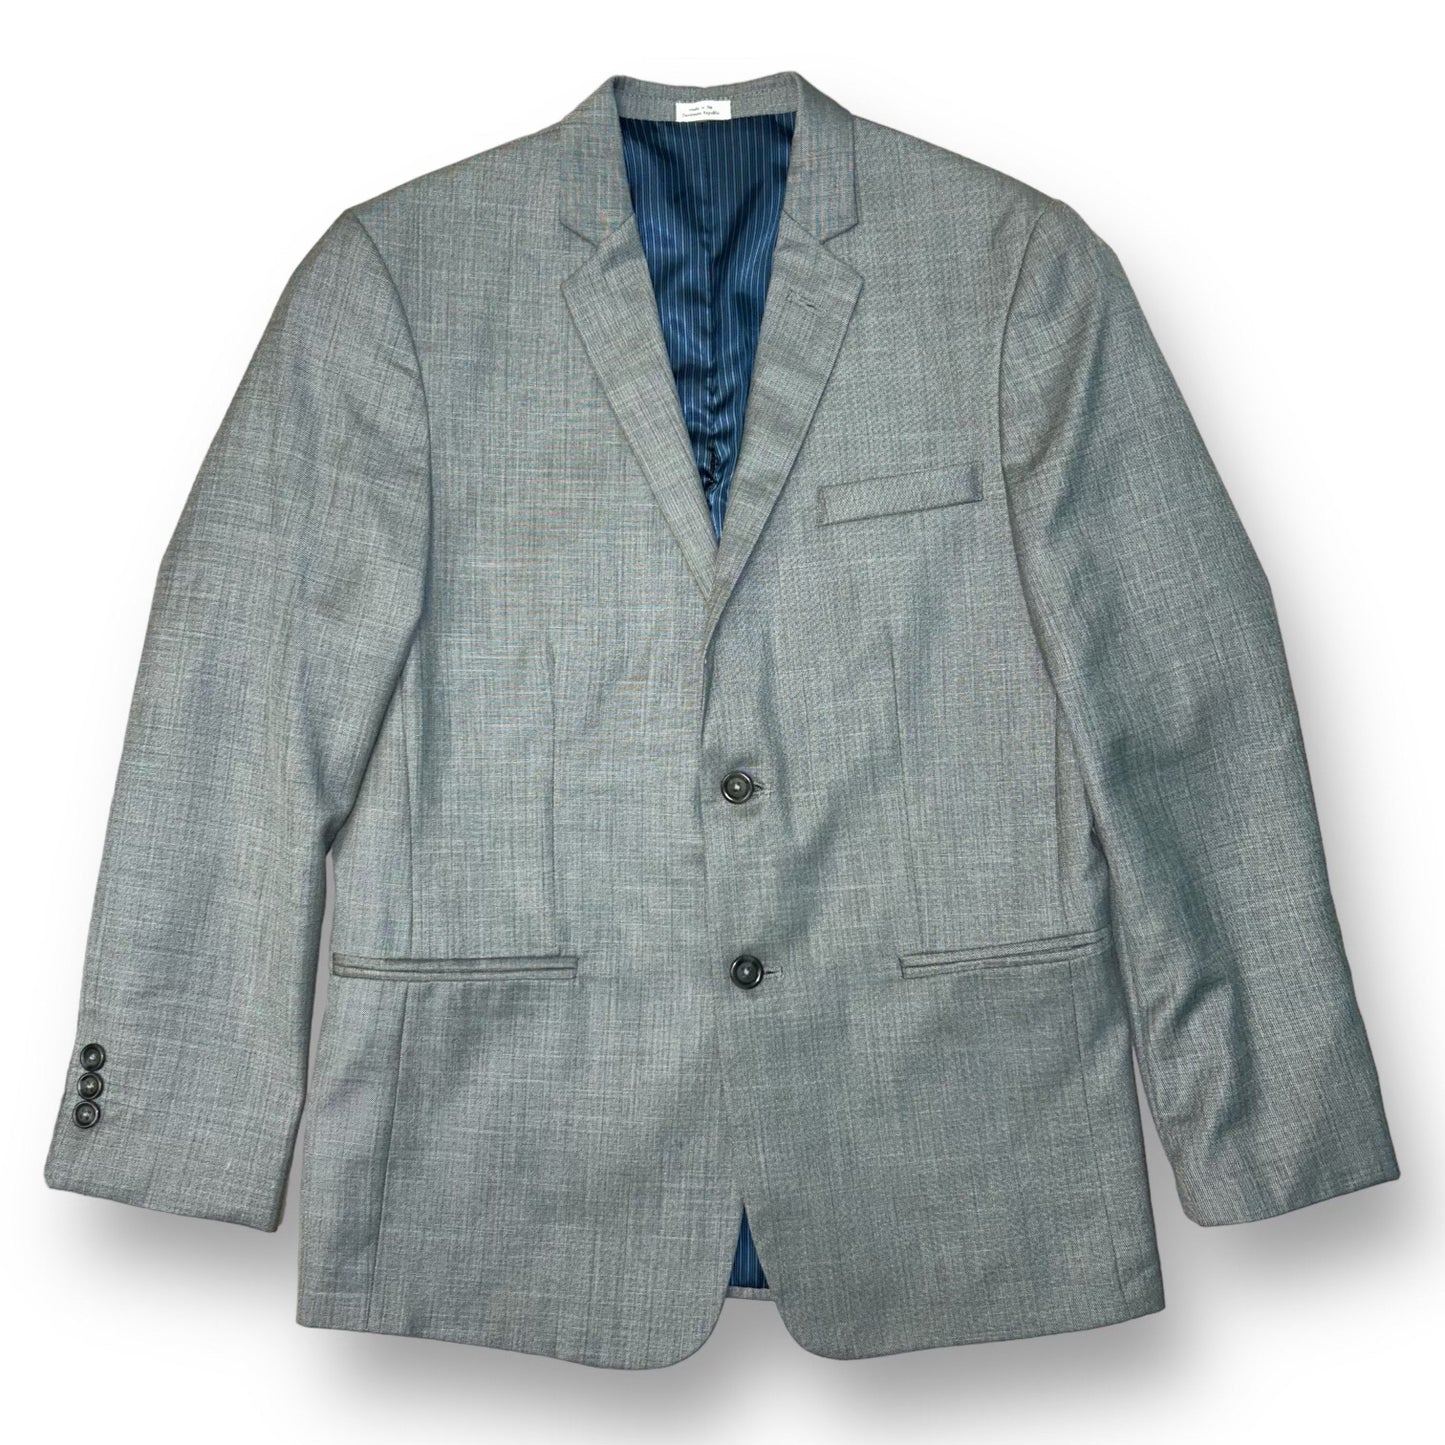 Boys Calvin Klein Size 16 YXL Gray Suit Jacket Blazer